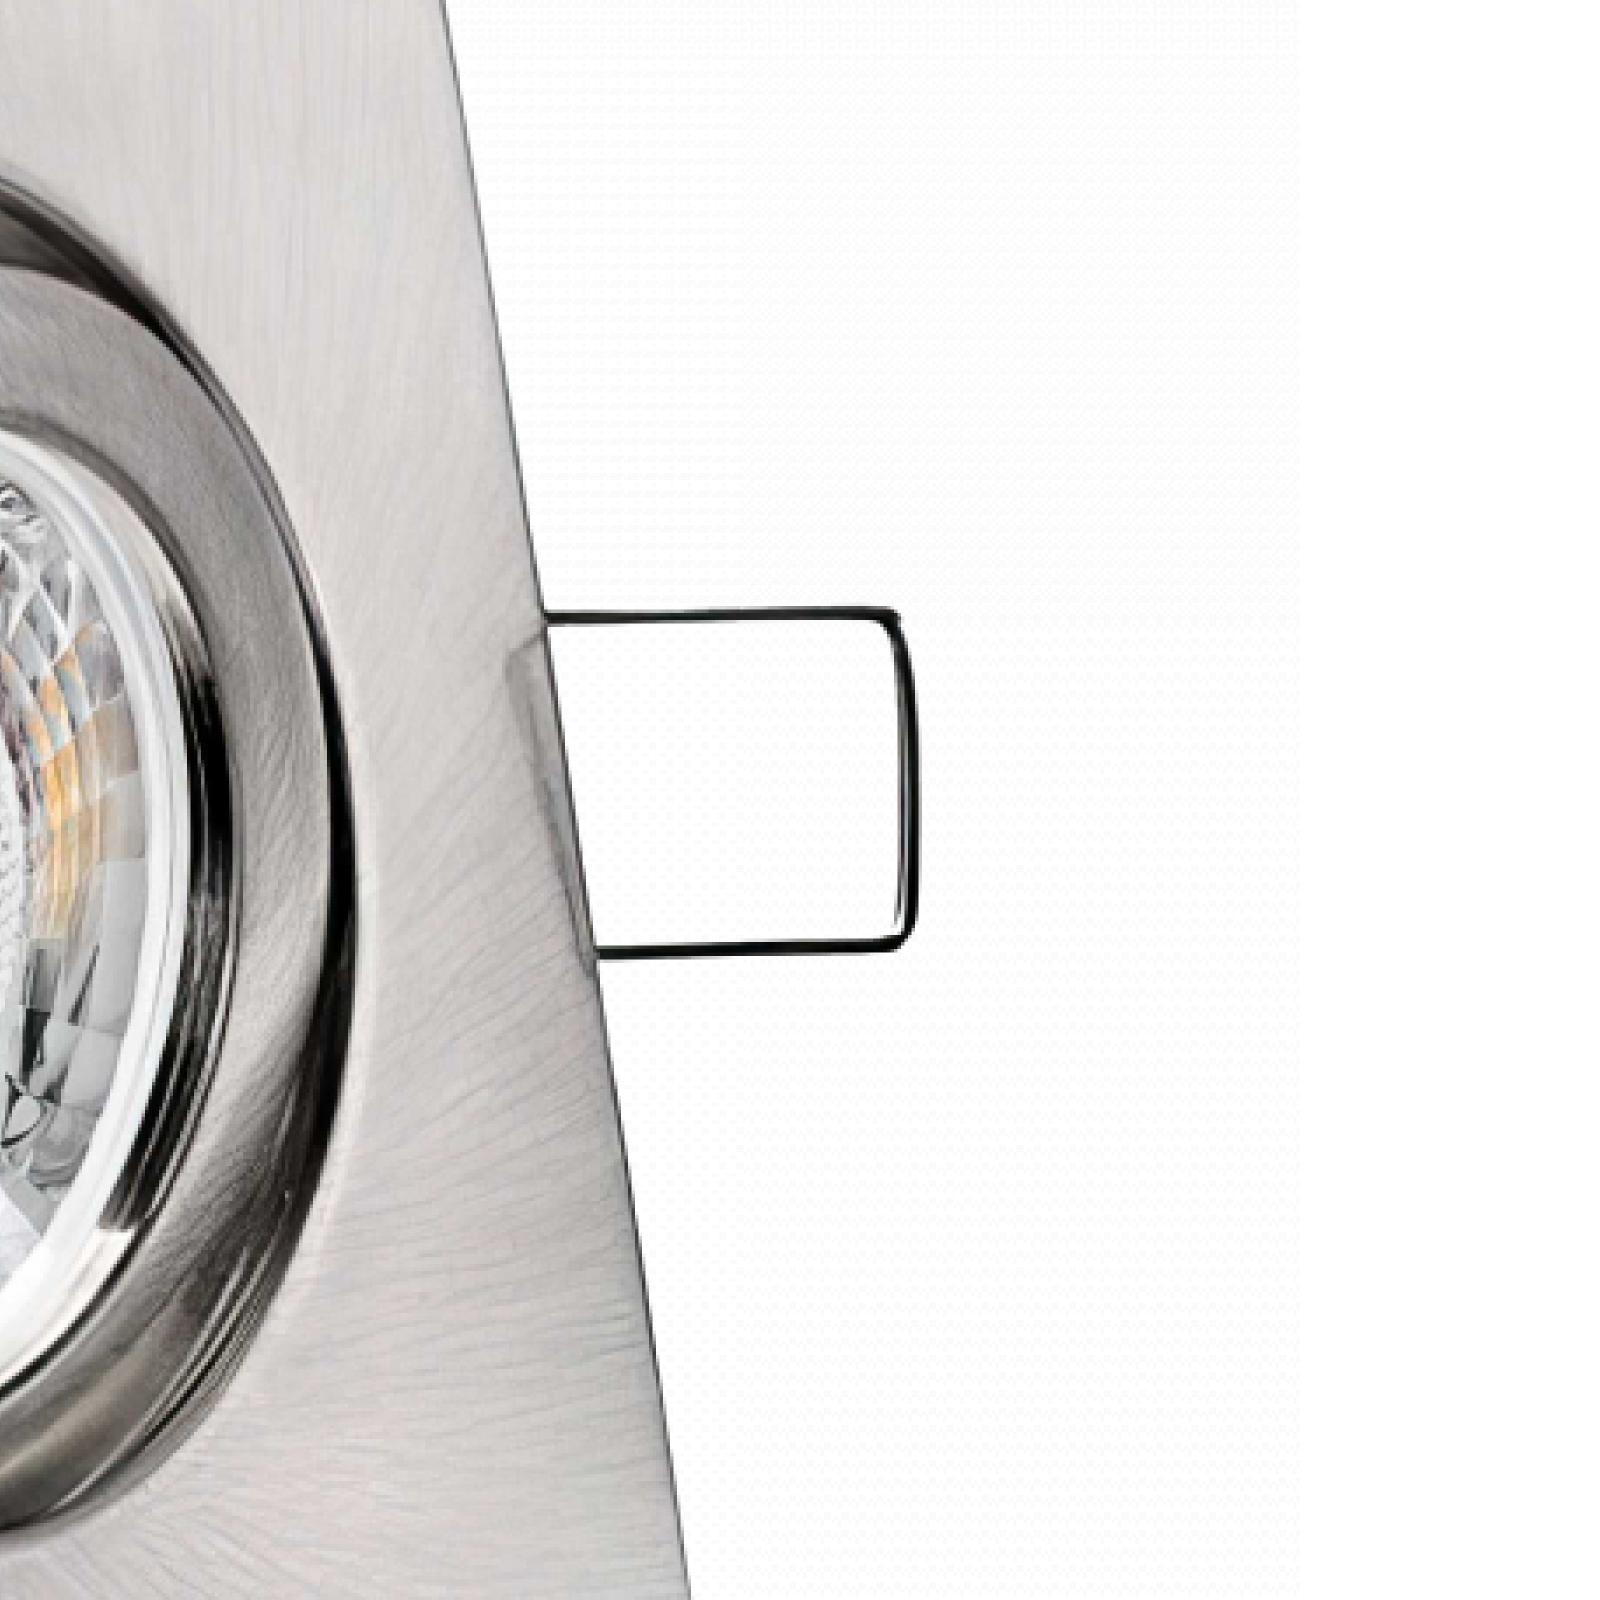 LED Einbaustrahler Edelstahl gebürstet | Quadratischer Einbauspot | 30° schwenkbar | Lochmaß Ø 68mm - 80mm | geringe Einbautiefe 25mm | Anschlussfertig 